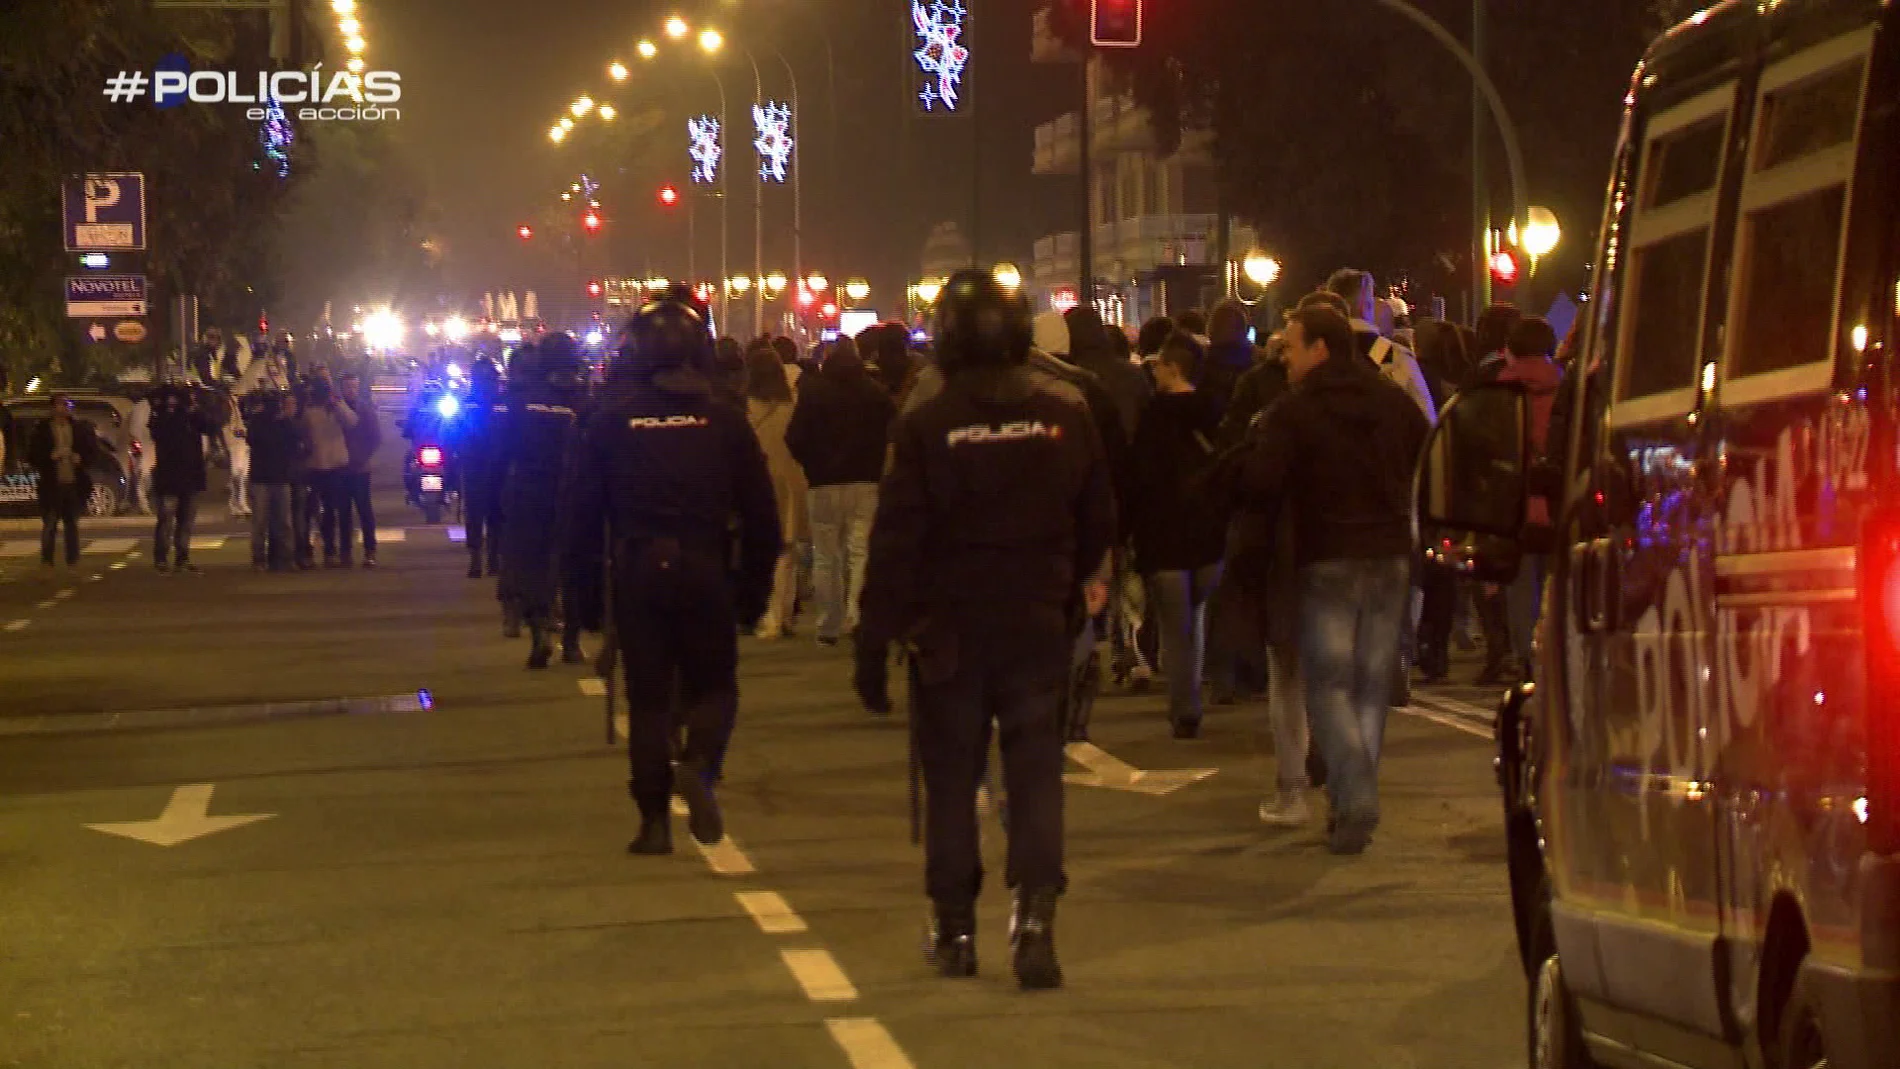 La Policía escolta a los aficionados del Rijeka hasta el estadio